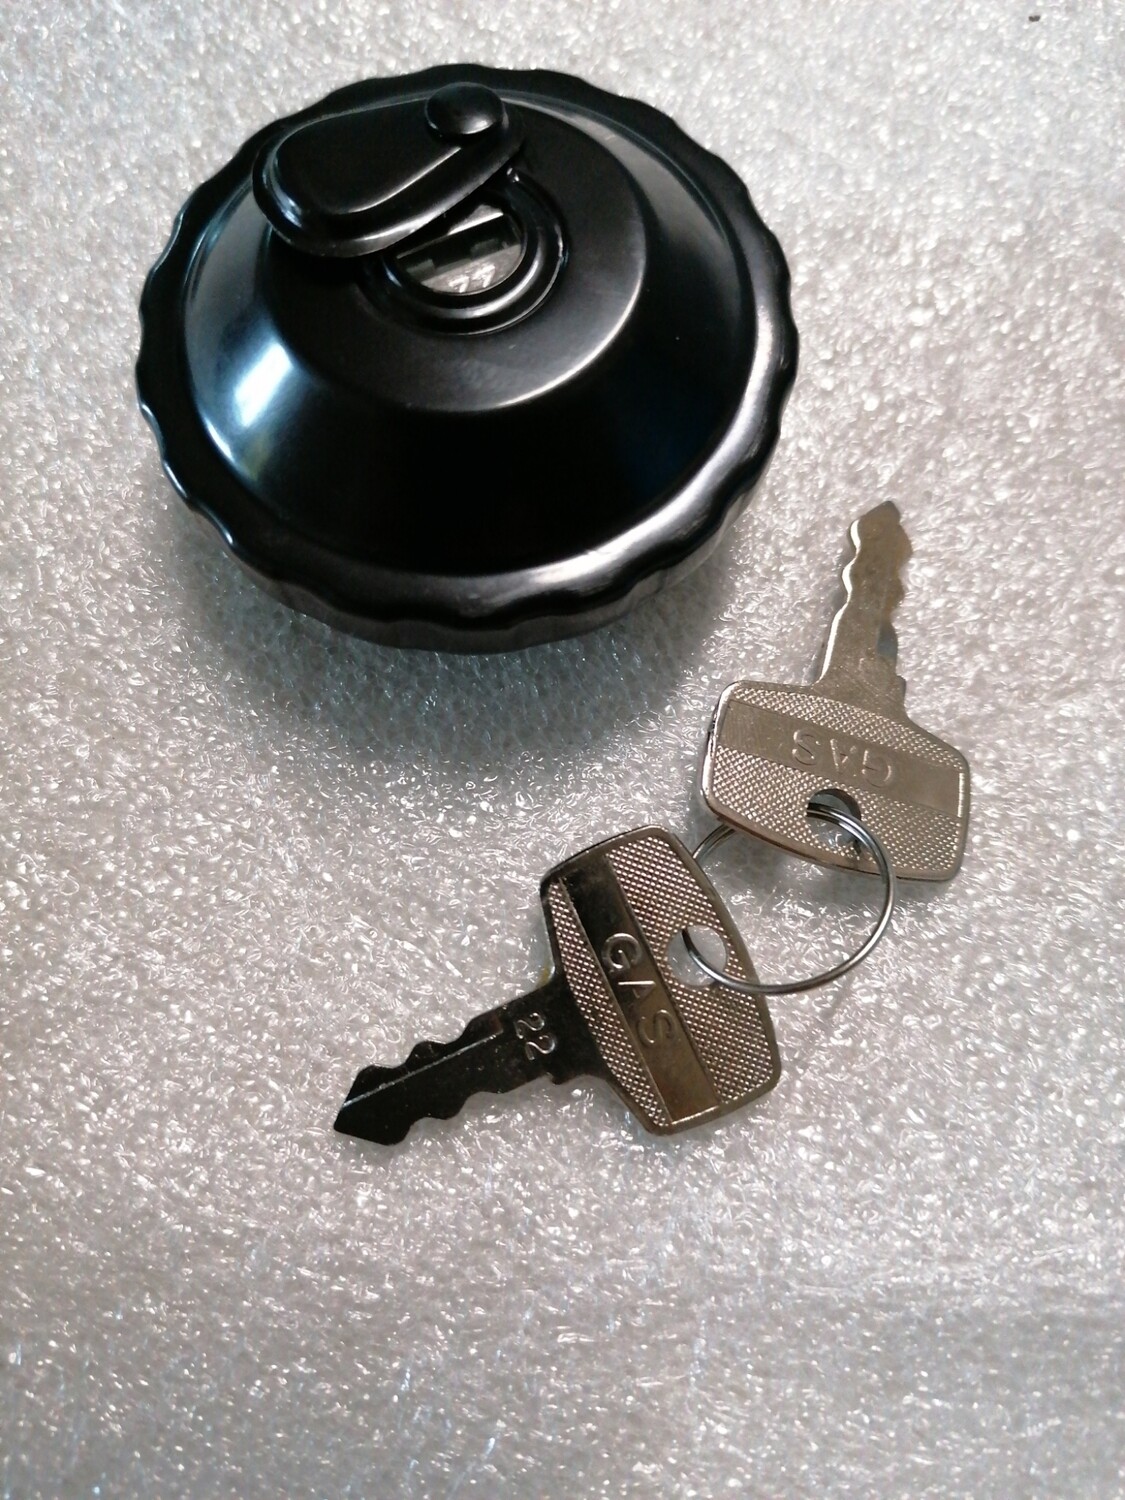 Benzinedop zwart met slot (2 sleutels)